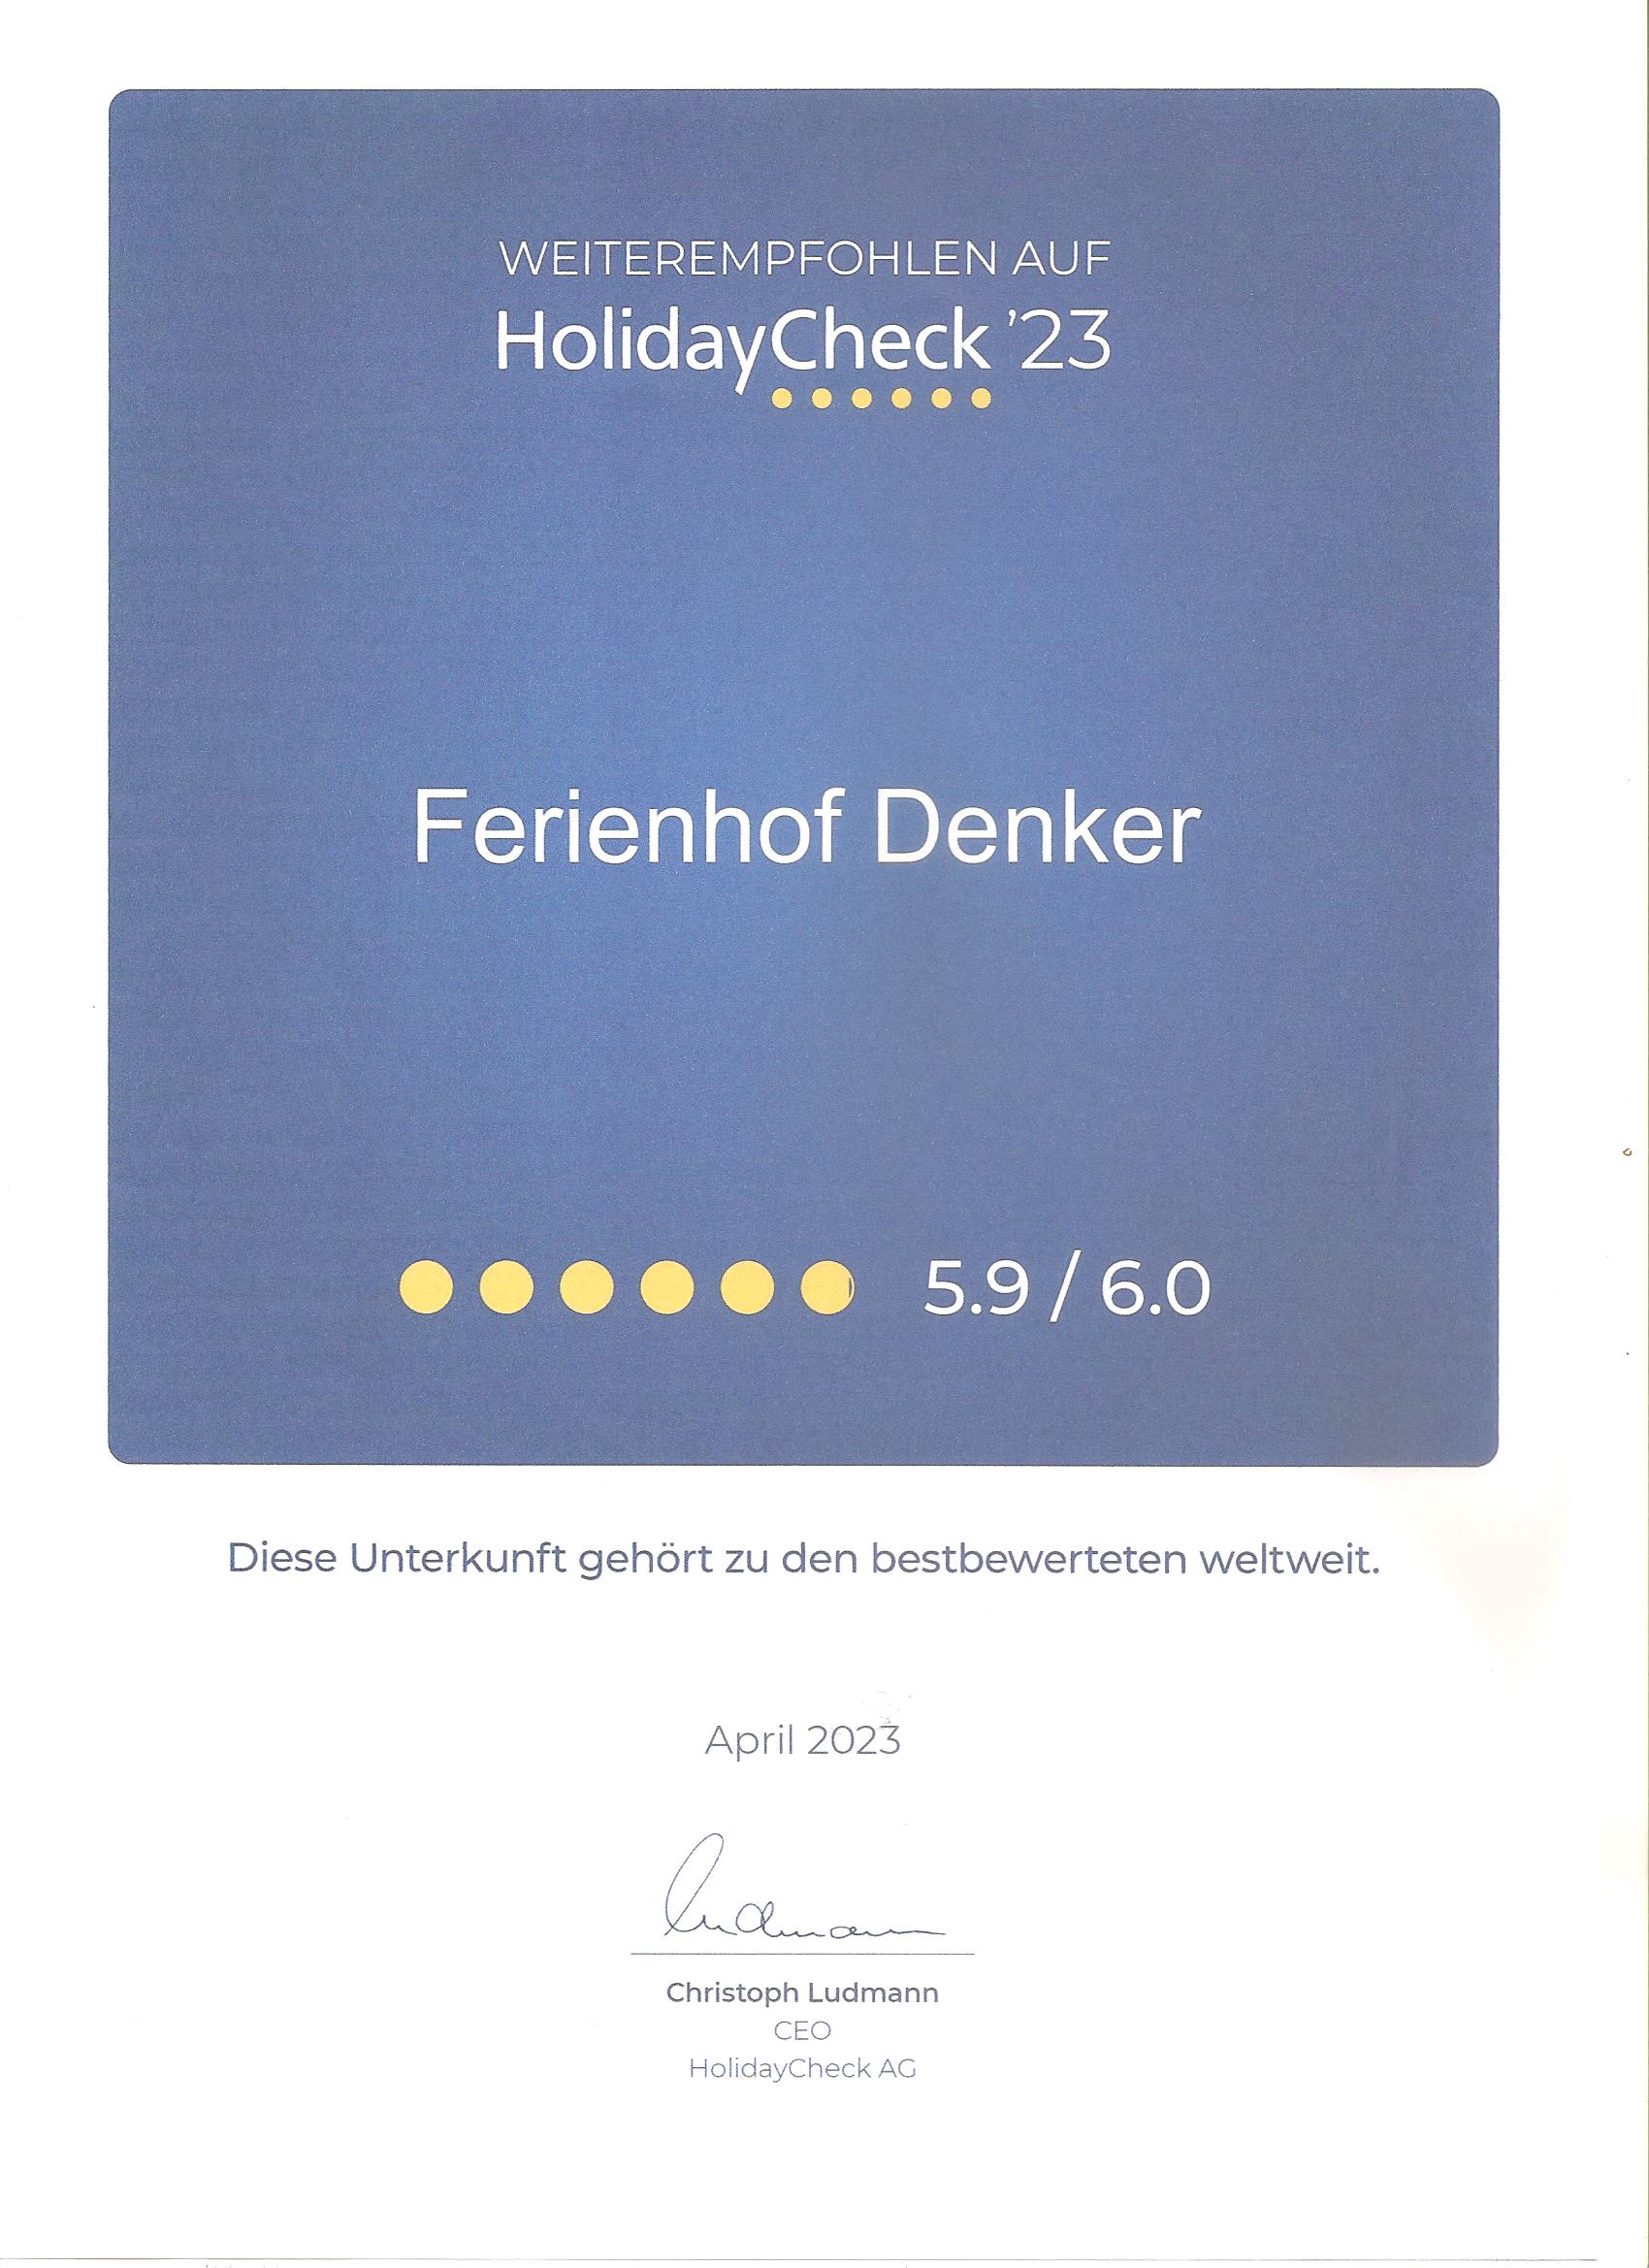 HolidayCheck Urkunde 2023 